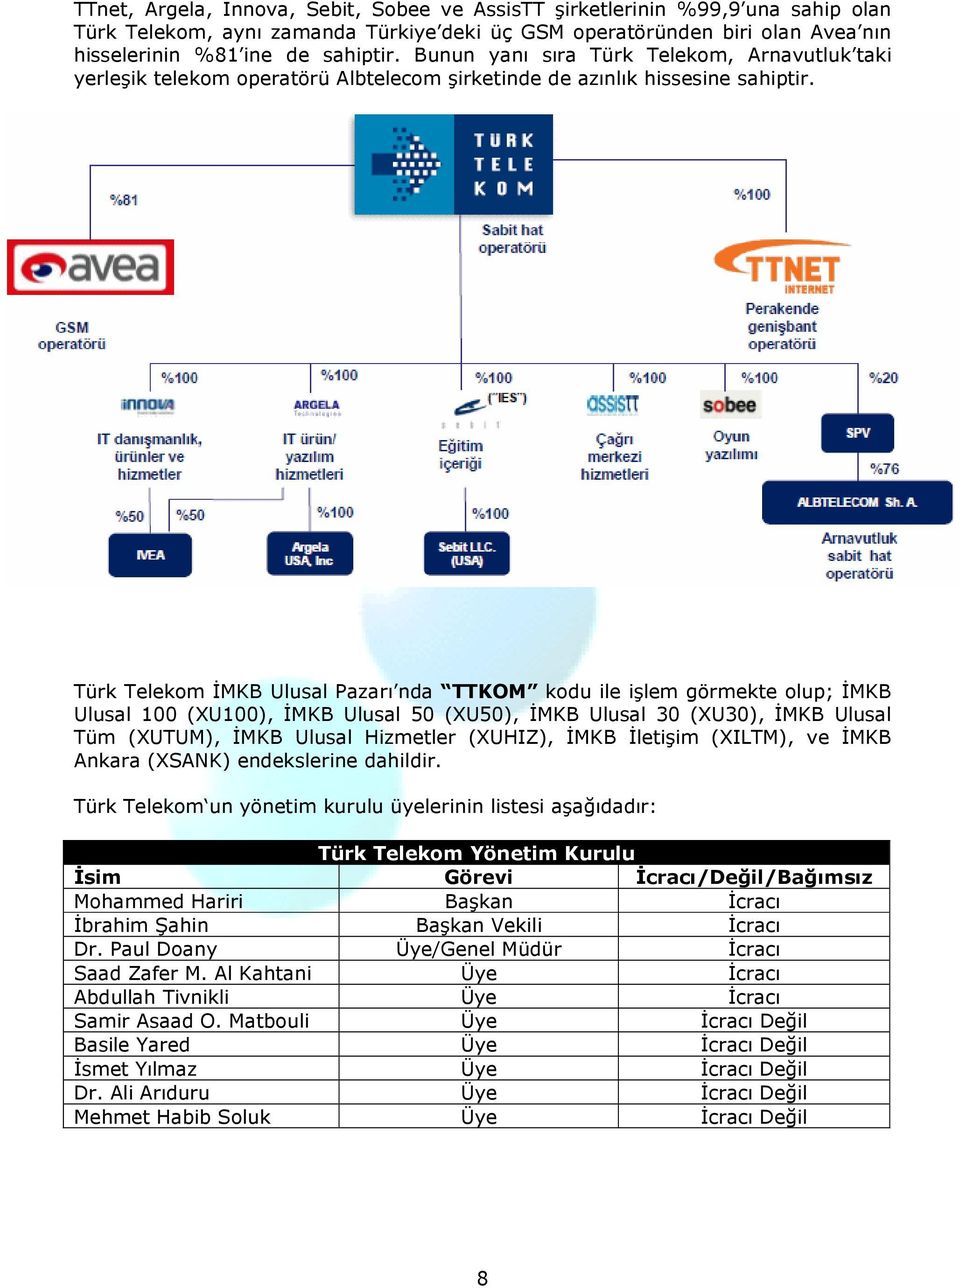 Türk Telekom ĐMKB Ulusal Pazarı nda TTKOM kodu ile işlem görmekte olup; ĐMKB Ulusal 100 (XU100), ĐMKB Ulusal 50 (XU50), ĐMKB Ulusal 30 (XU30), ĐMKB Ulusal Tüm (XUTUM), ĐMKB Ulusal Hizmetler (XUHIZ),